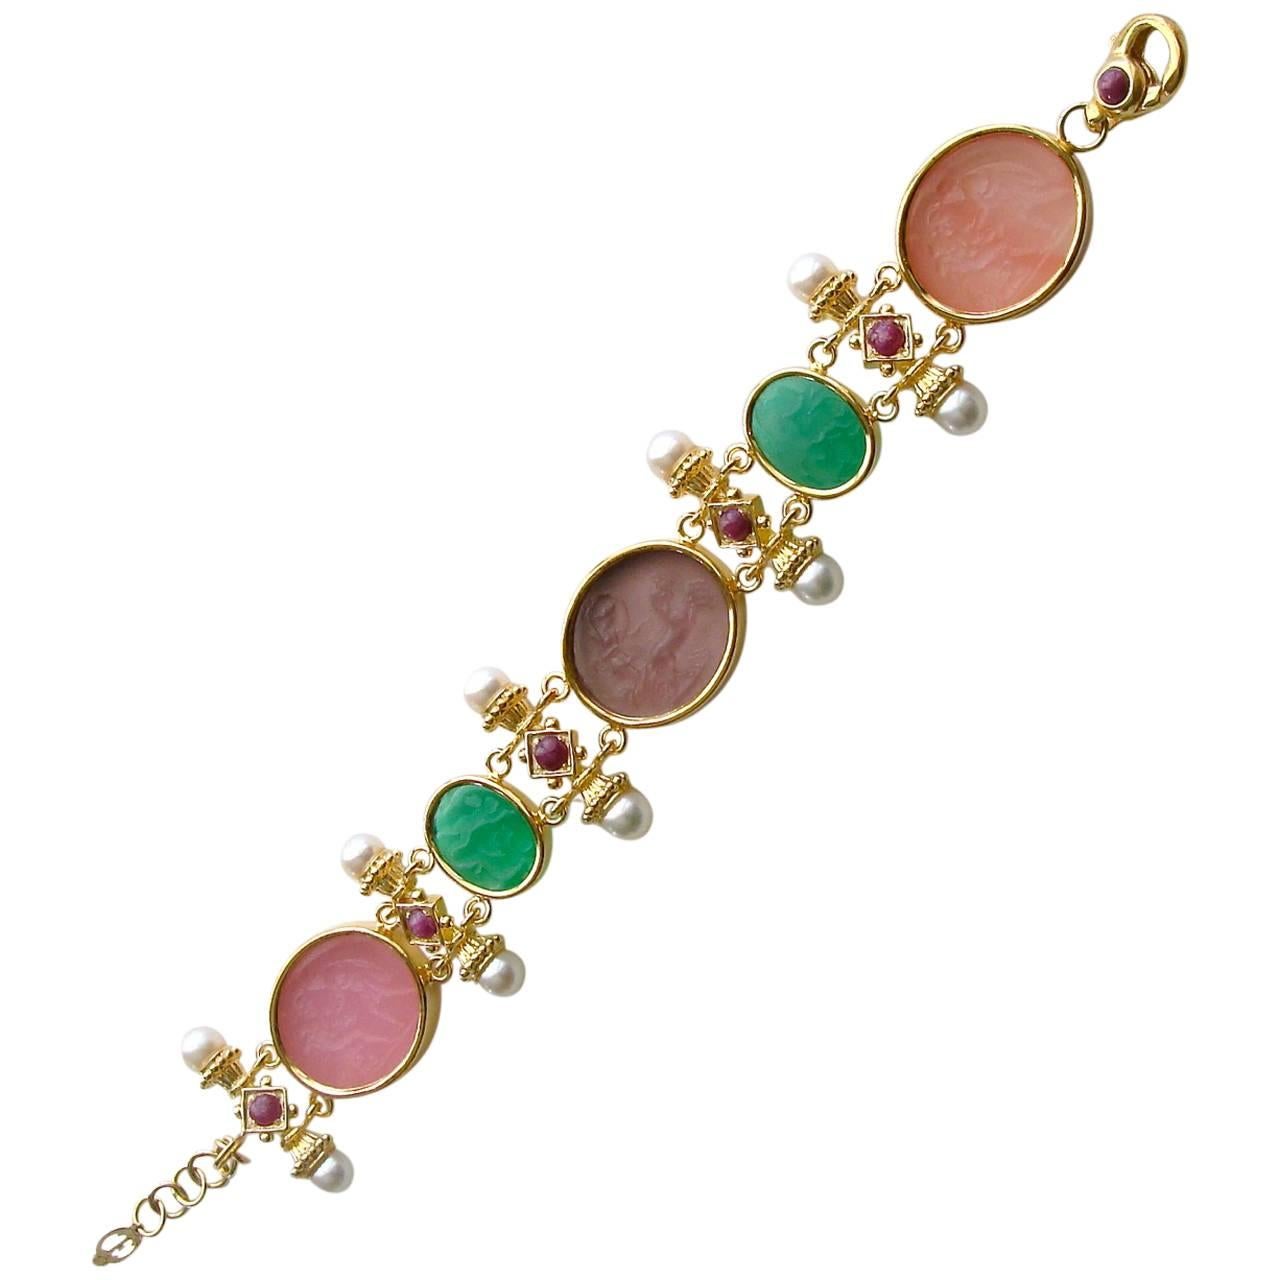 Venetian Glass Intaglios Pearls Rubies Bracelet